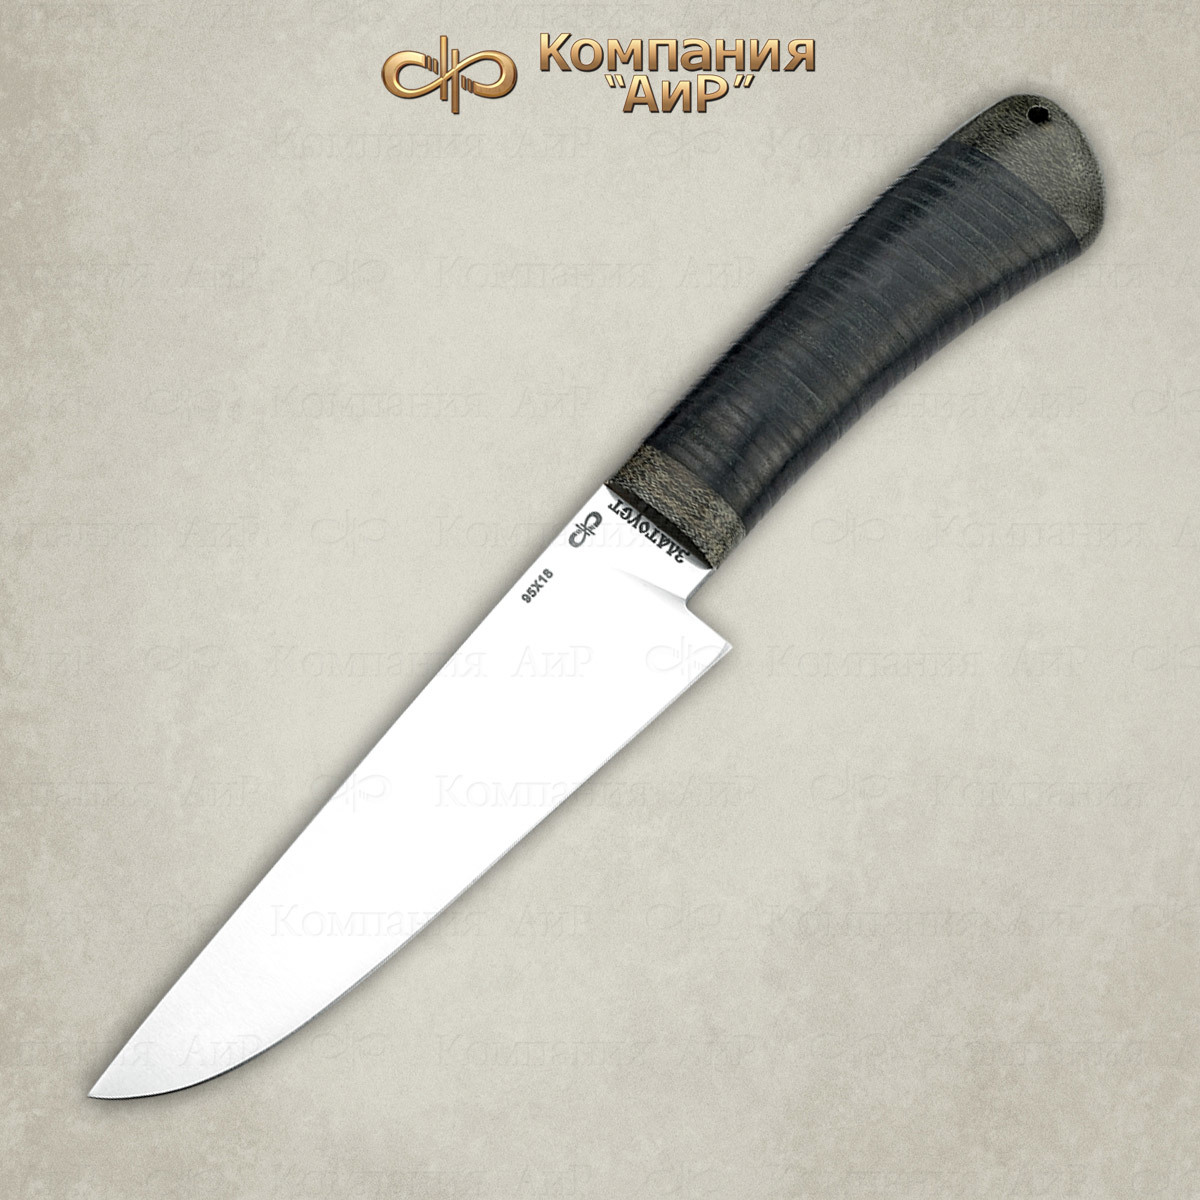 Нож Барибал 95х18, кожа, АиР от Ножиков